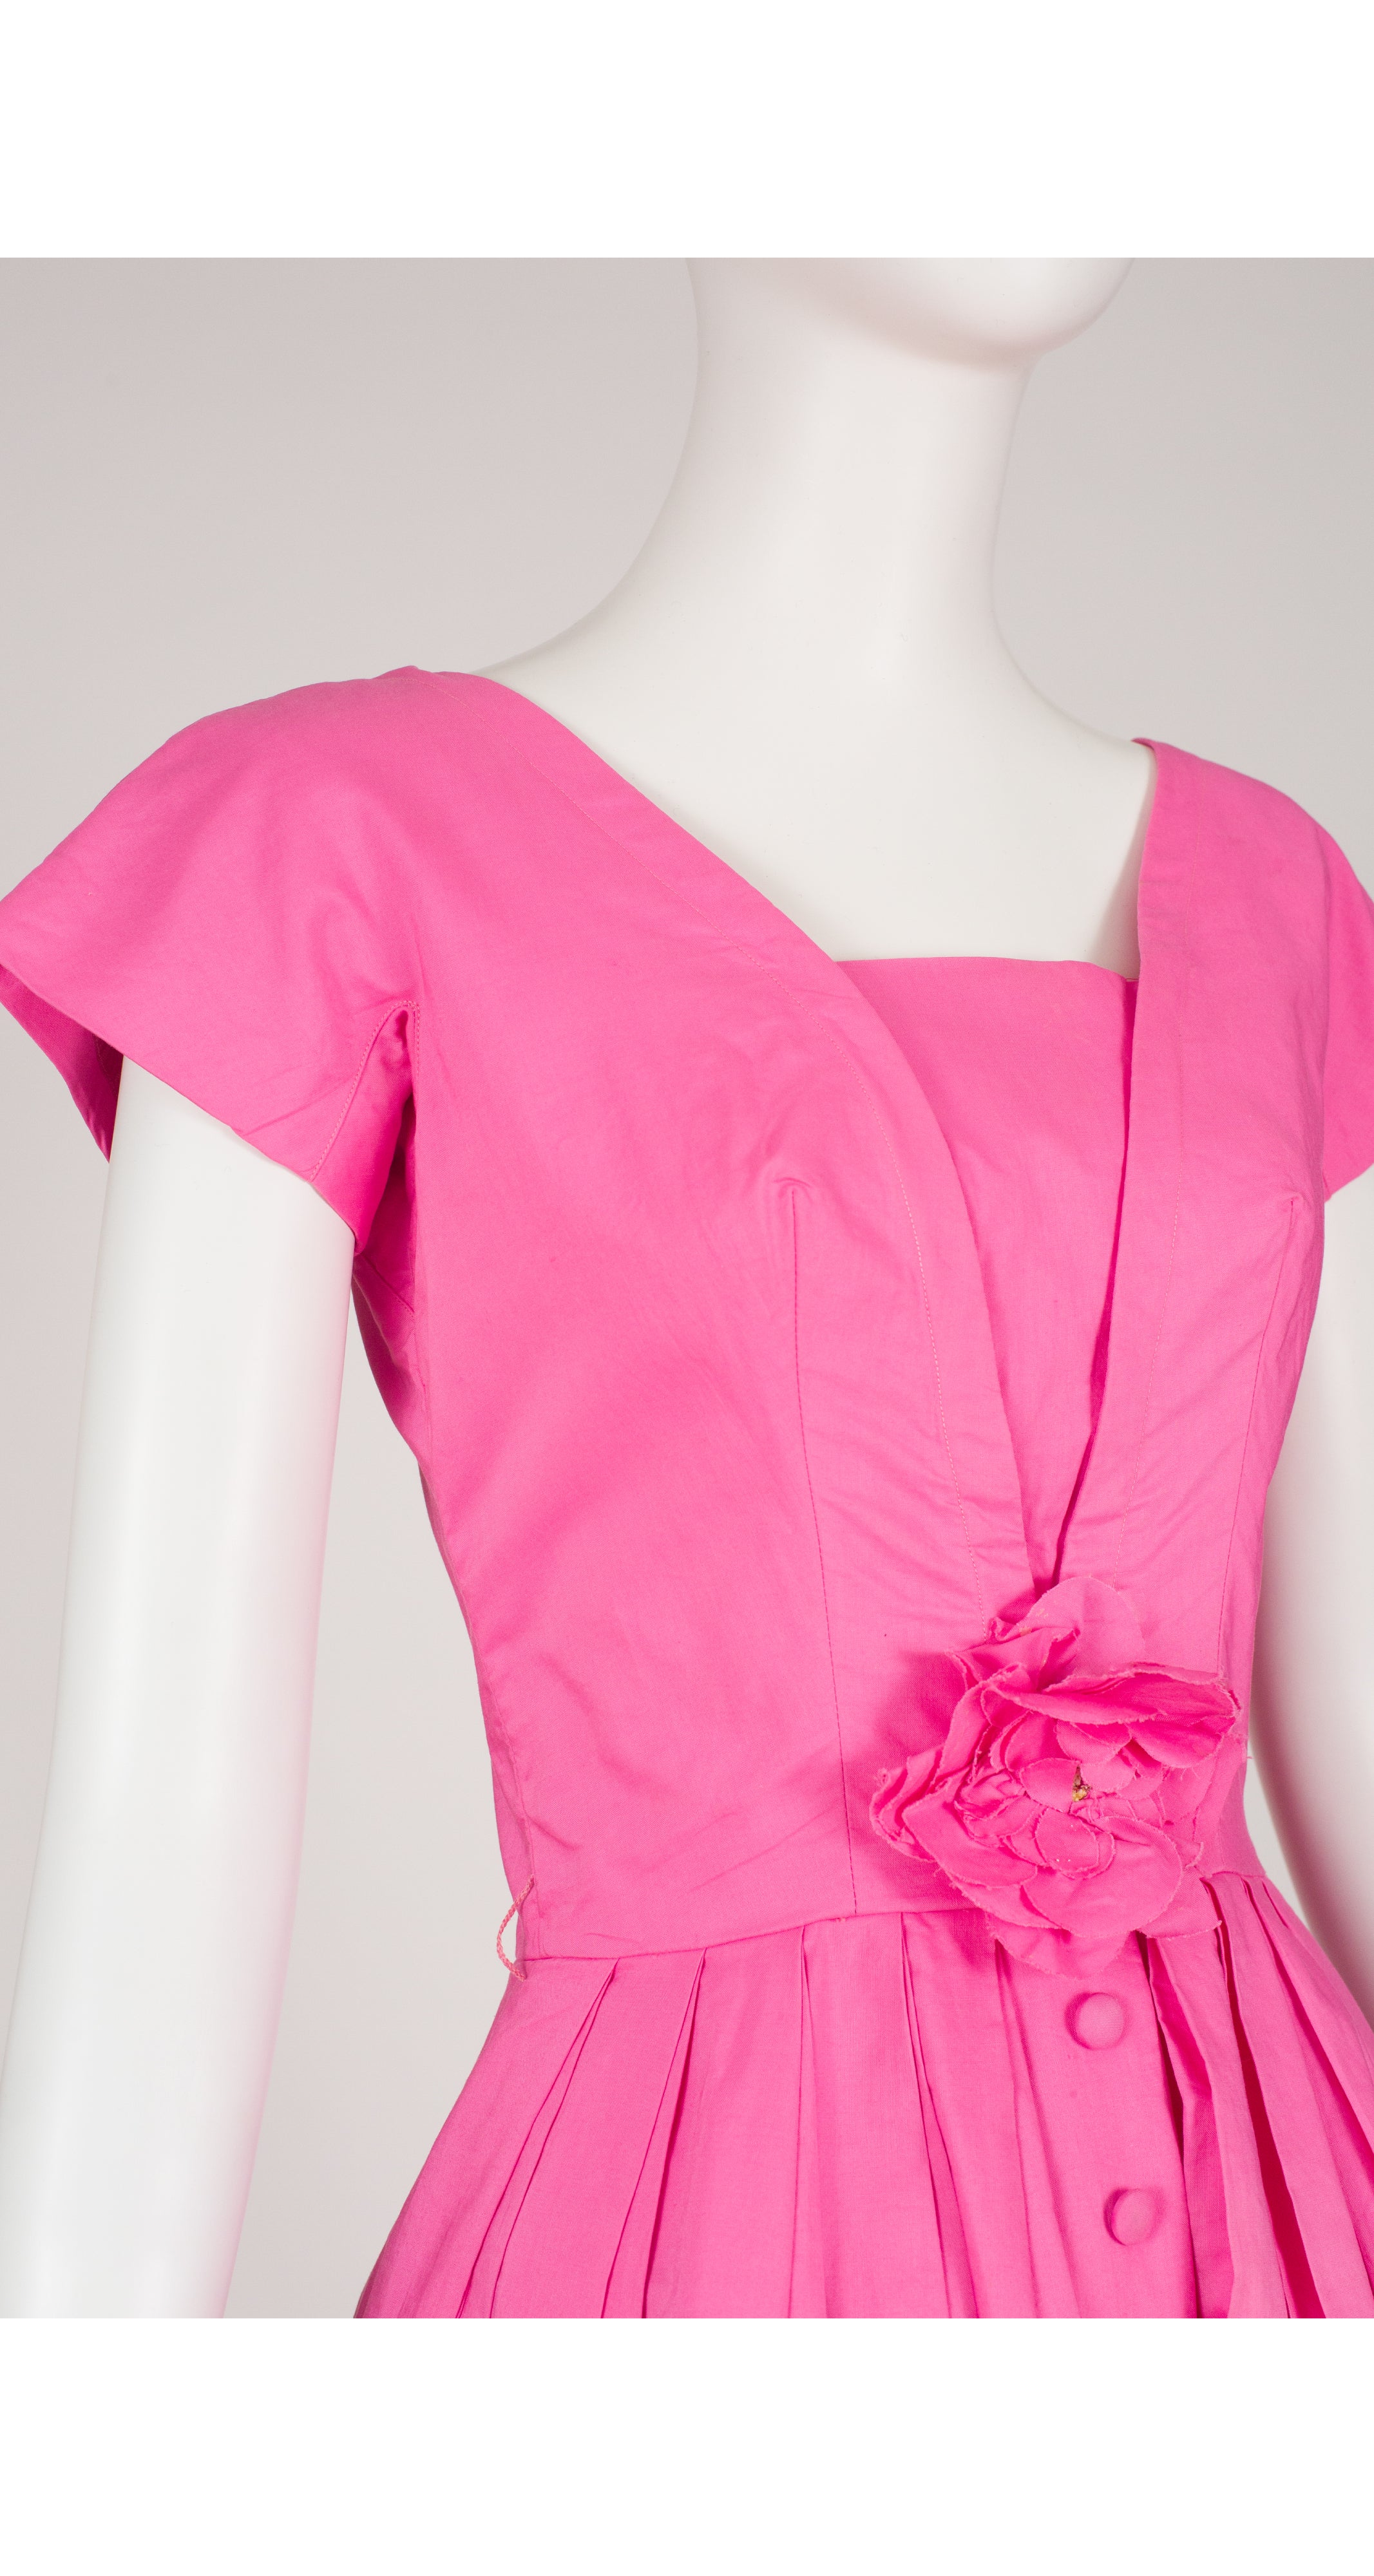 1950s Bubble Gum Pink Cotton Fit & Flare Dress